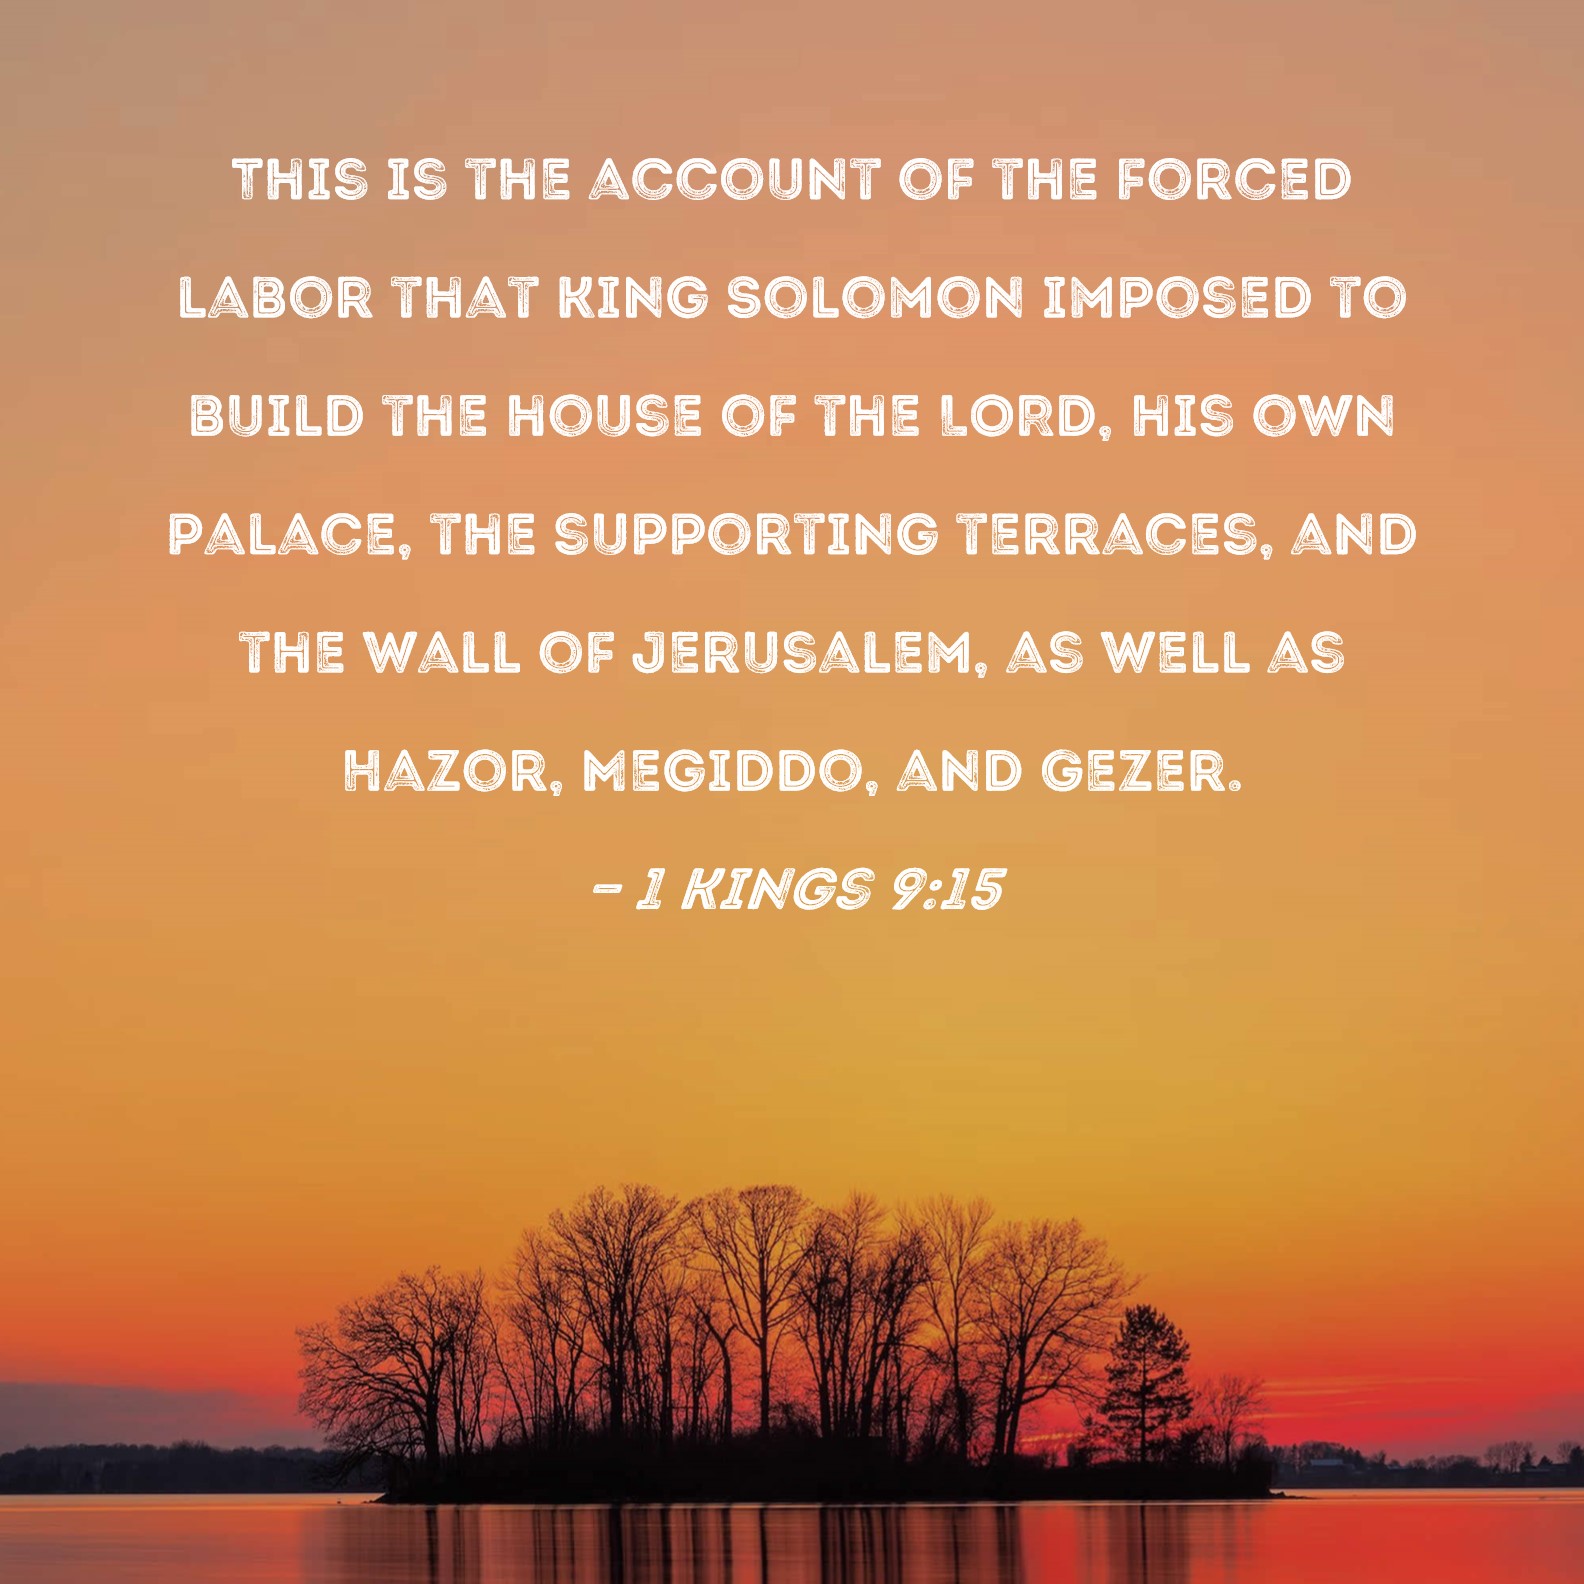 1 Kings 3:9-10